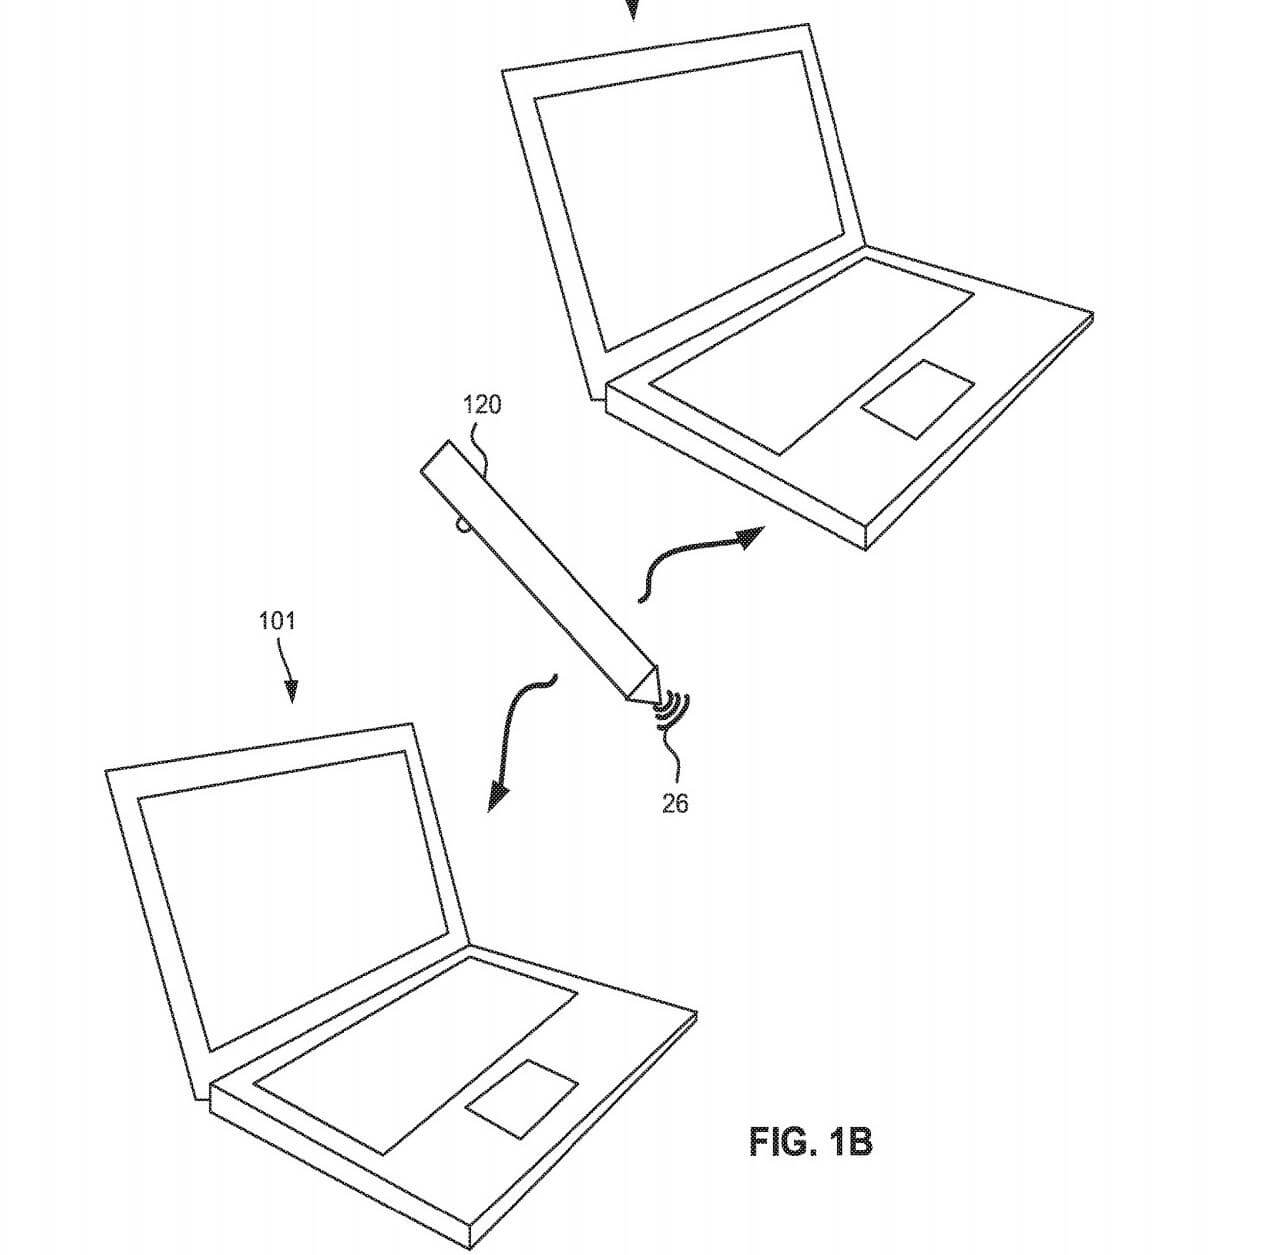 Surface Pen Patent Design